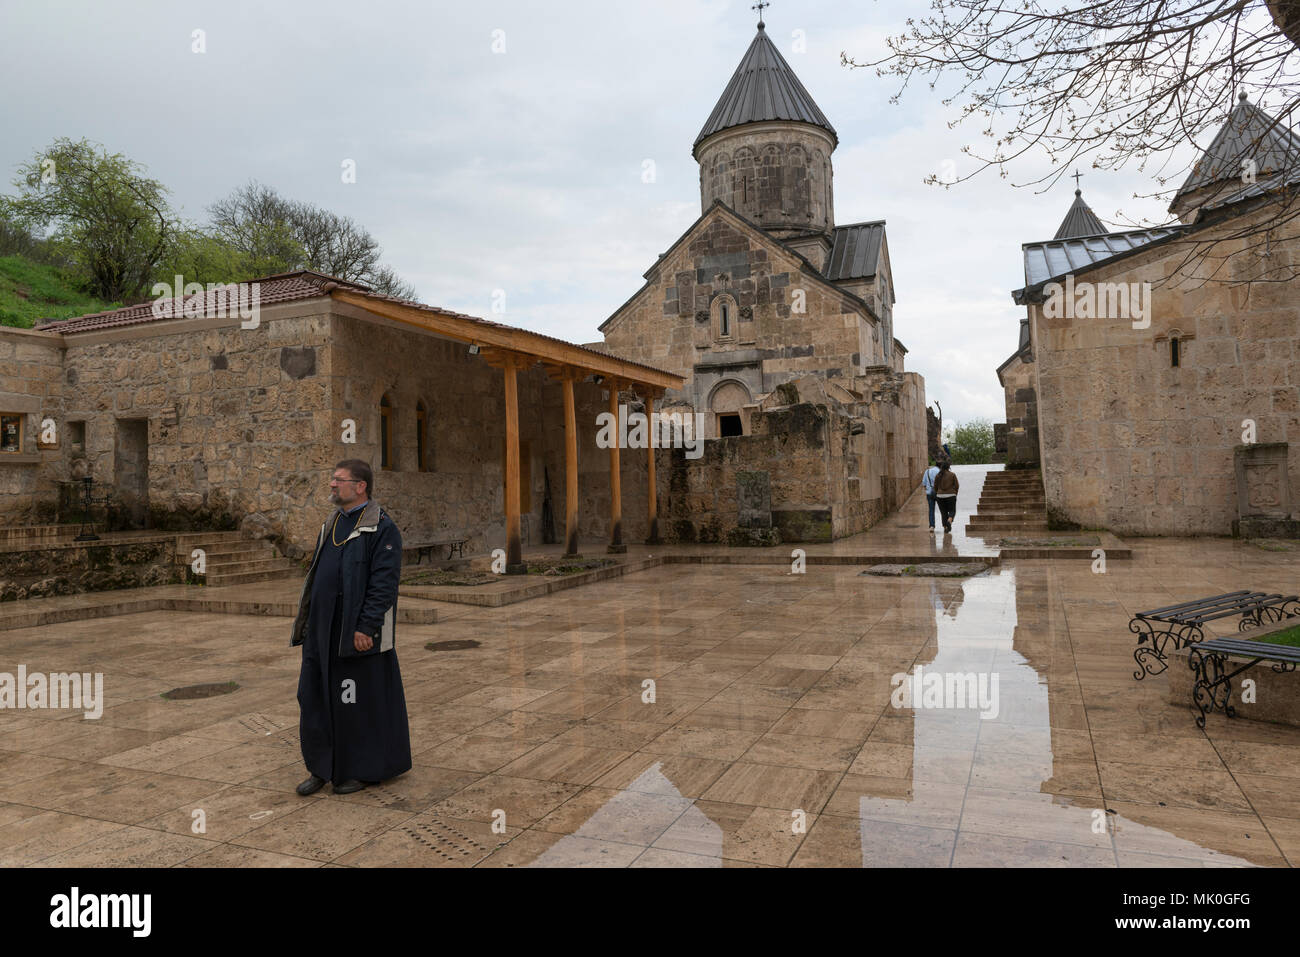 The Haghartsin monastery, Tavush province, Armenia Stock Photo